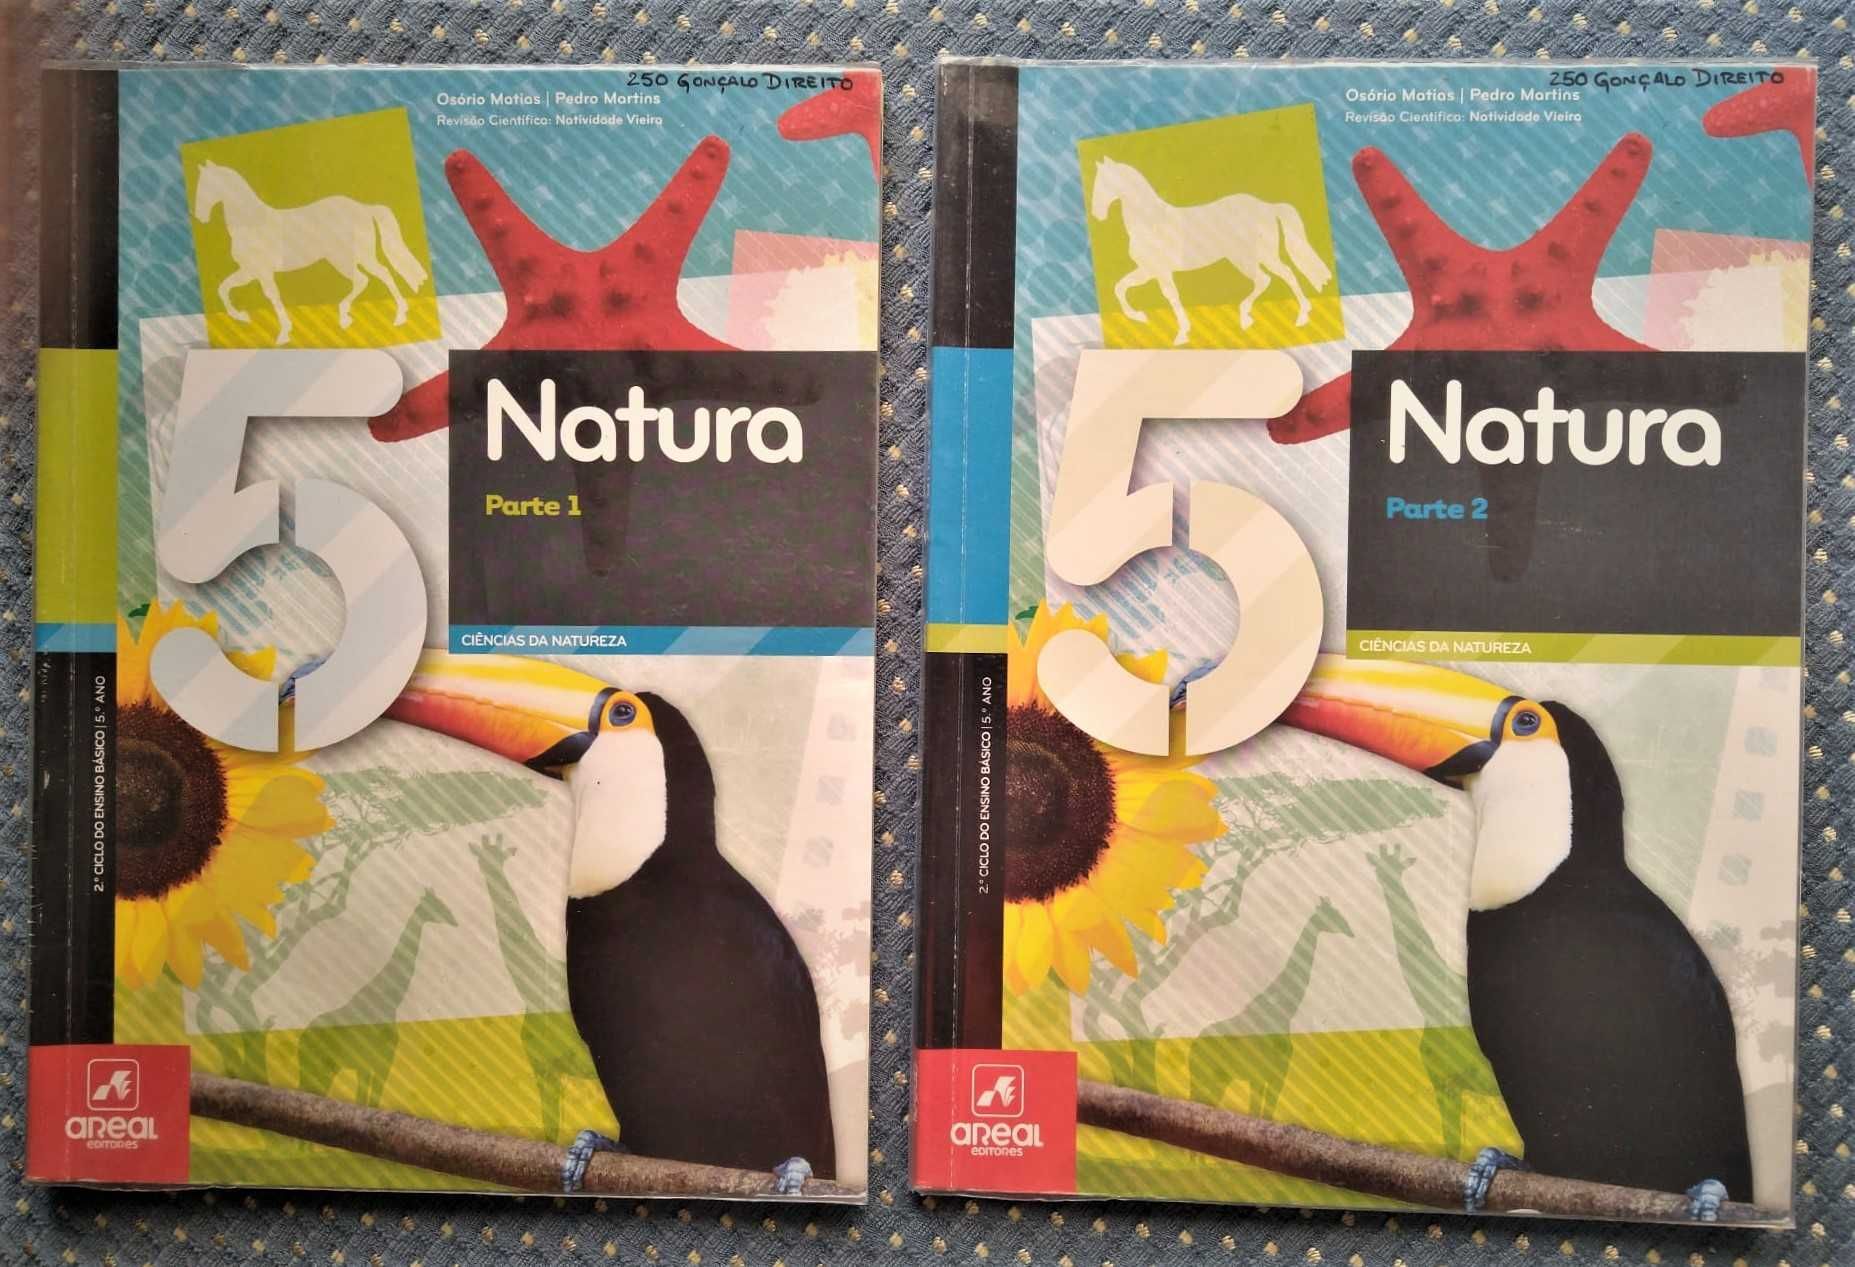 "Natura 5 Ciências da Natureza 5º Ano" Manual: Partes 1 & 2 - Ótimos!